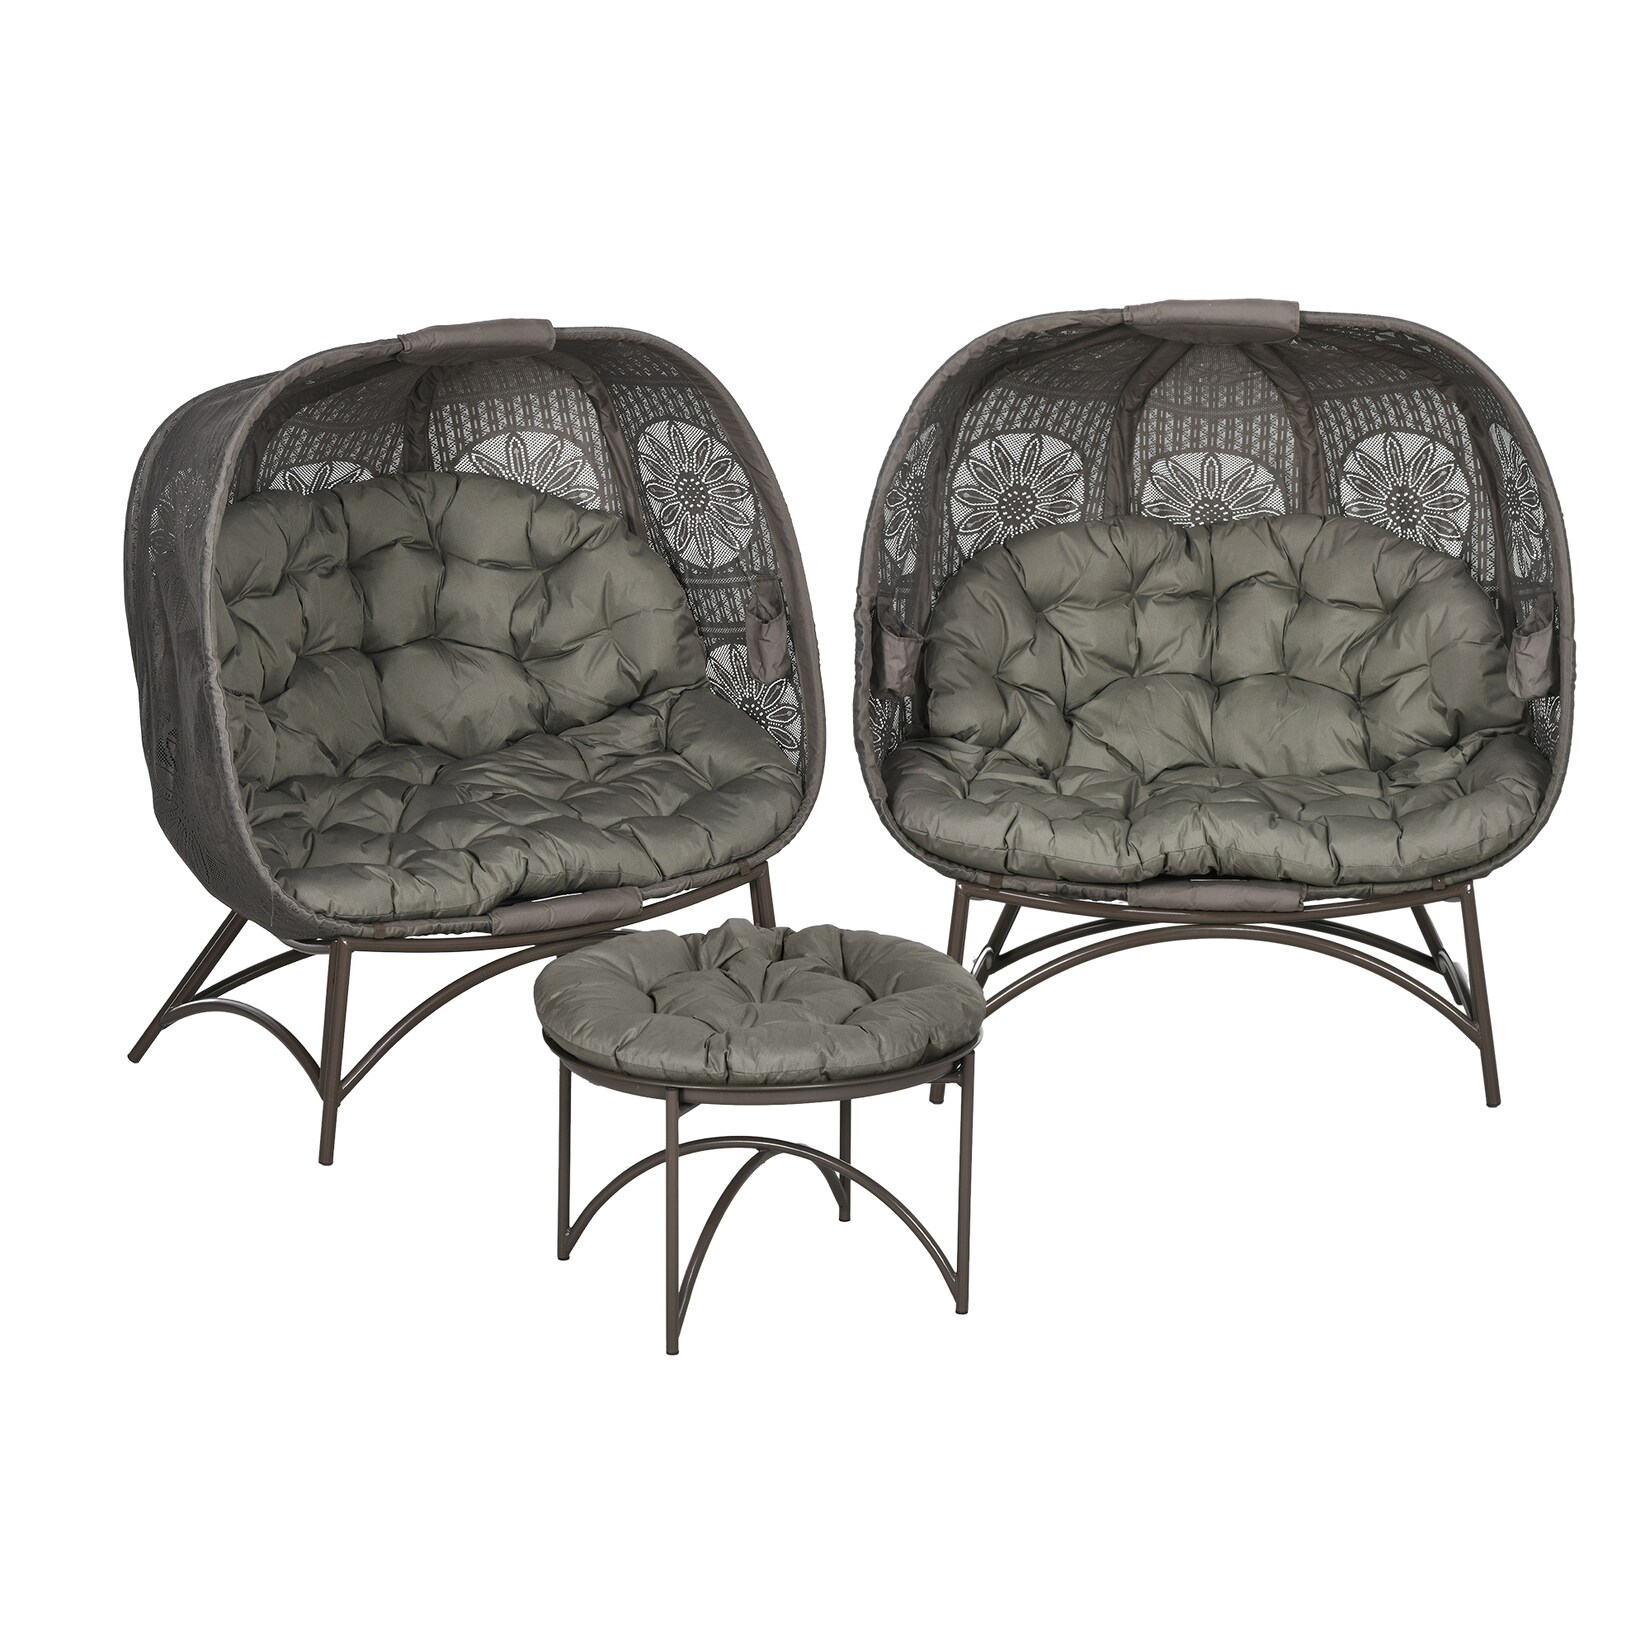 Outsunny Korbgartenstuhl-Set mit Sitzkissen und kleinen Beistelltisch grau 126L x 75B x 142Hcm